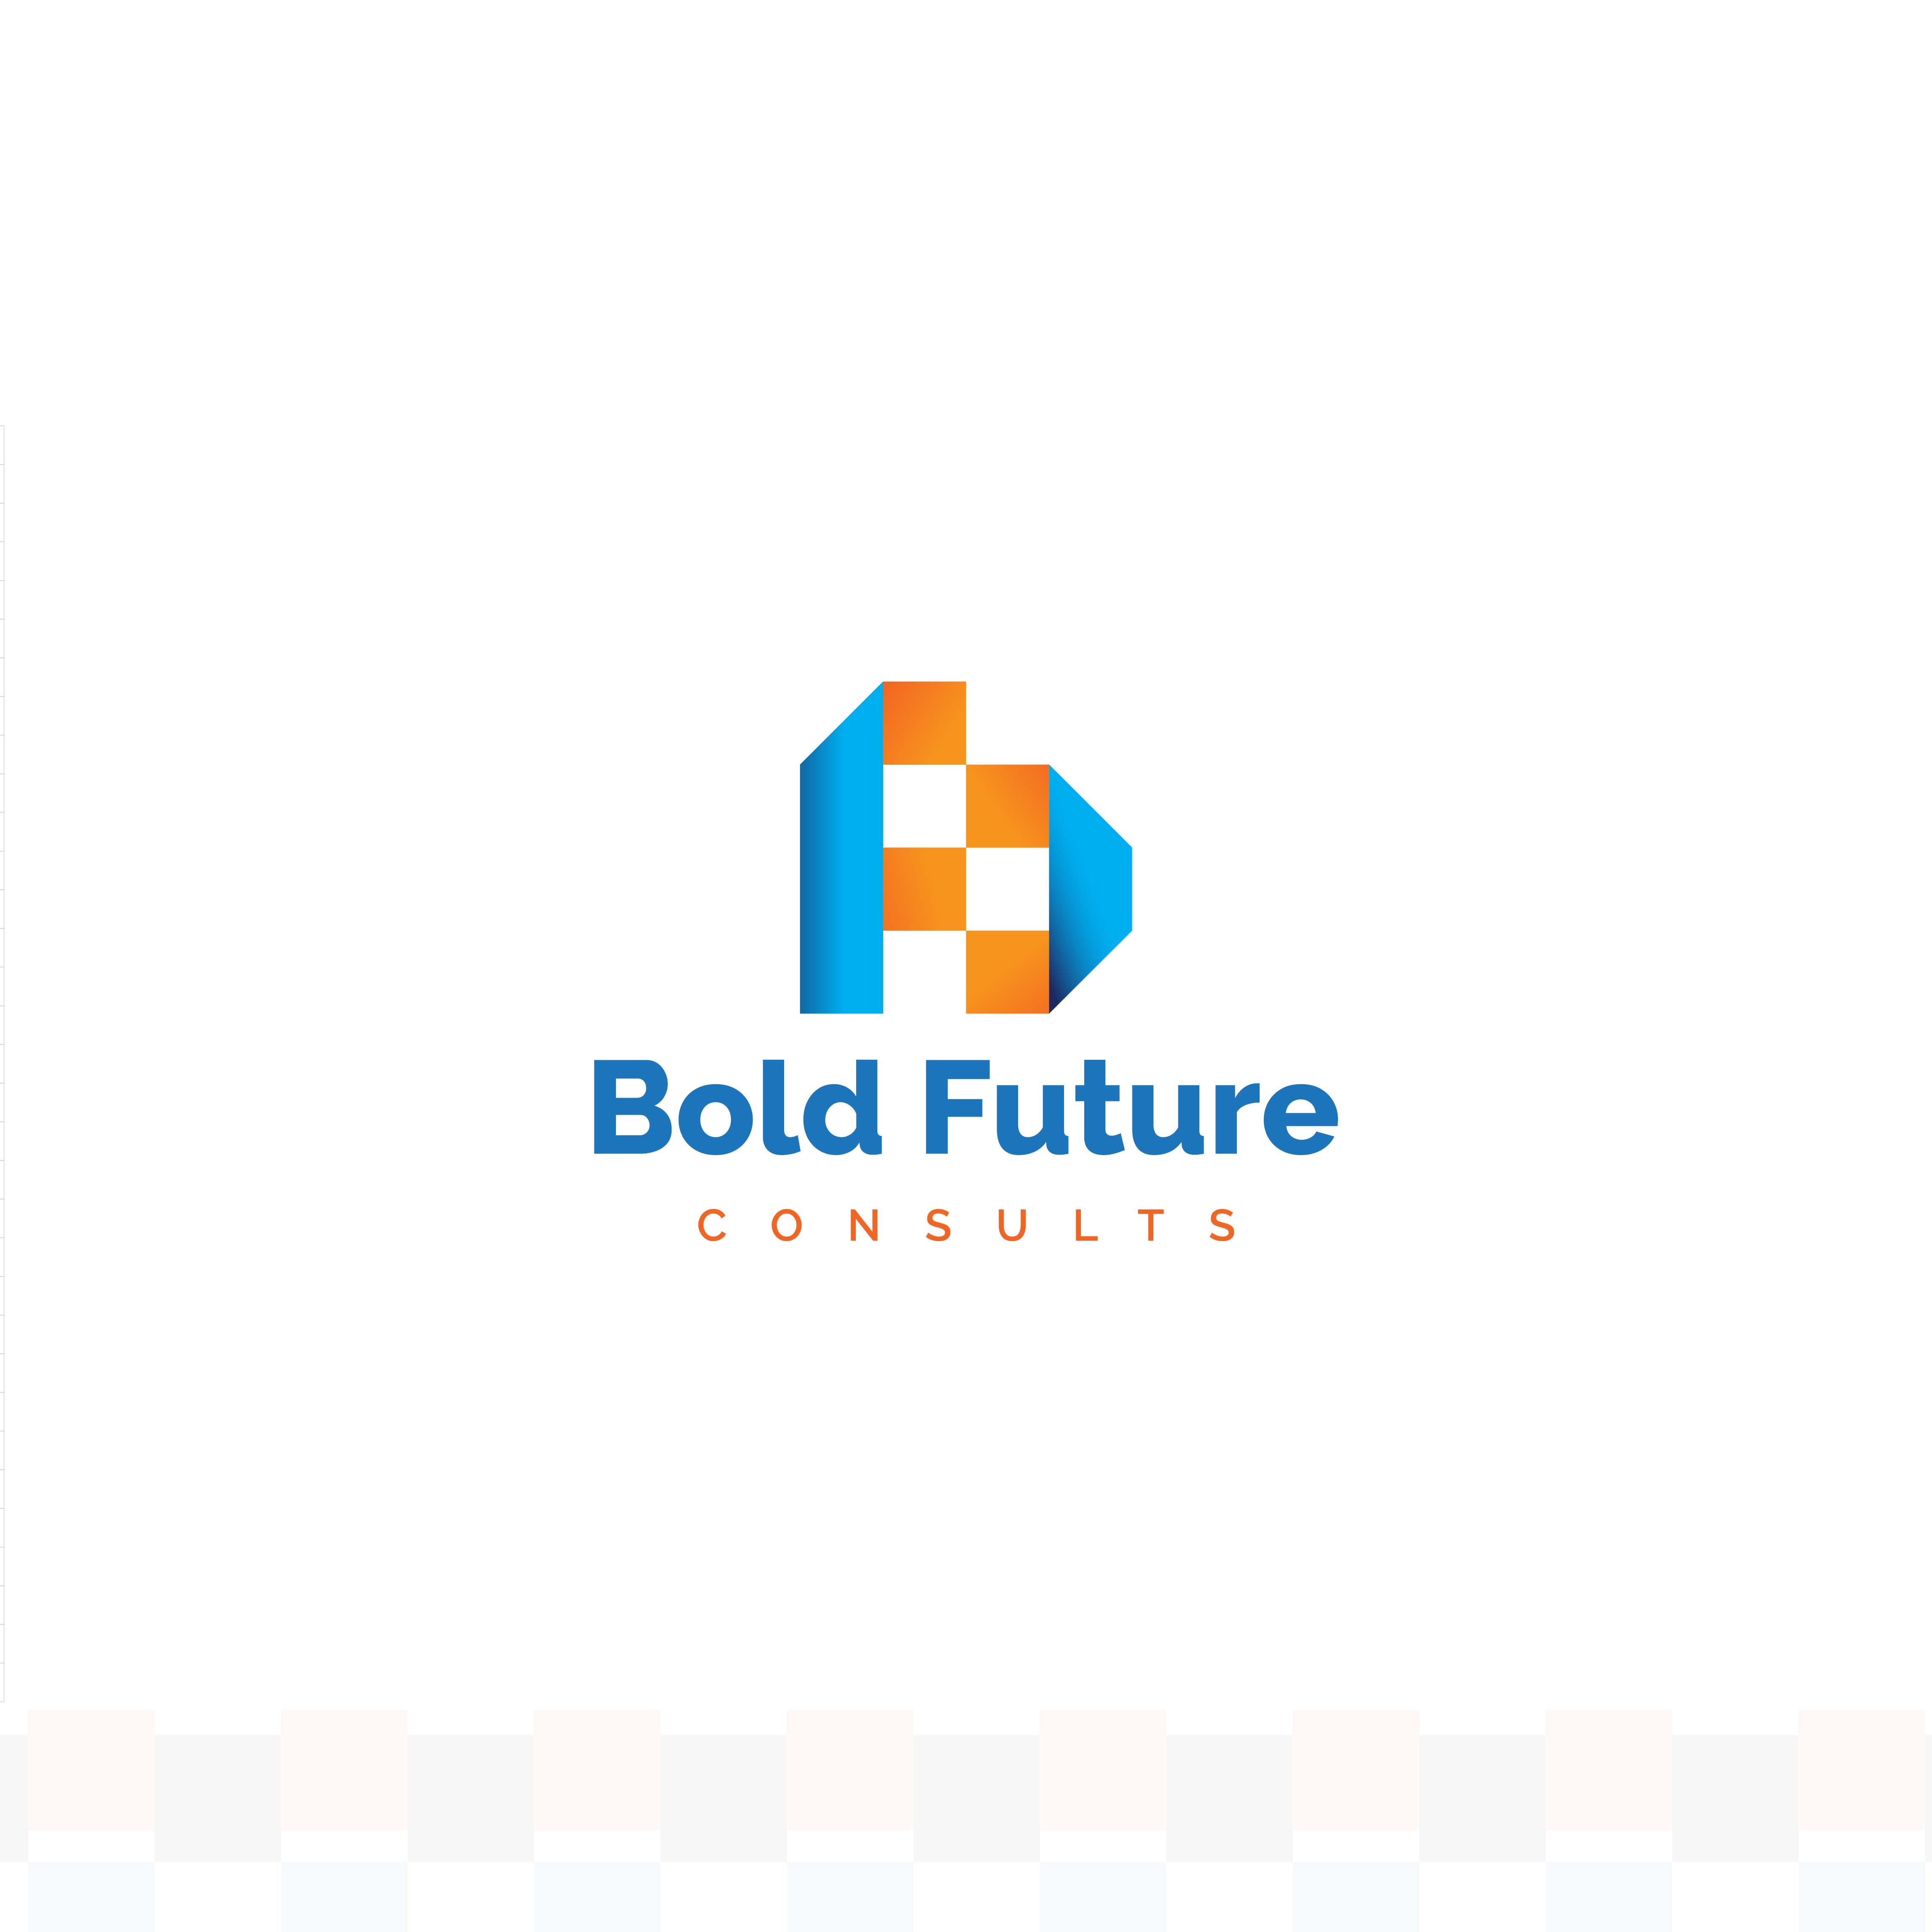 Bold Future Consults Logo Design[2 in 1 (F+C=b)] cover image.